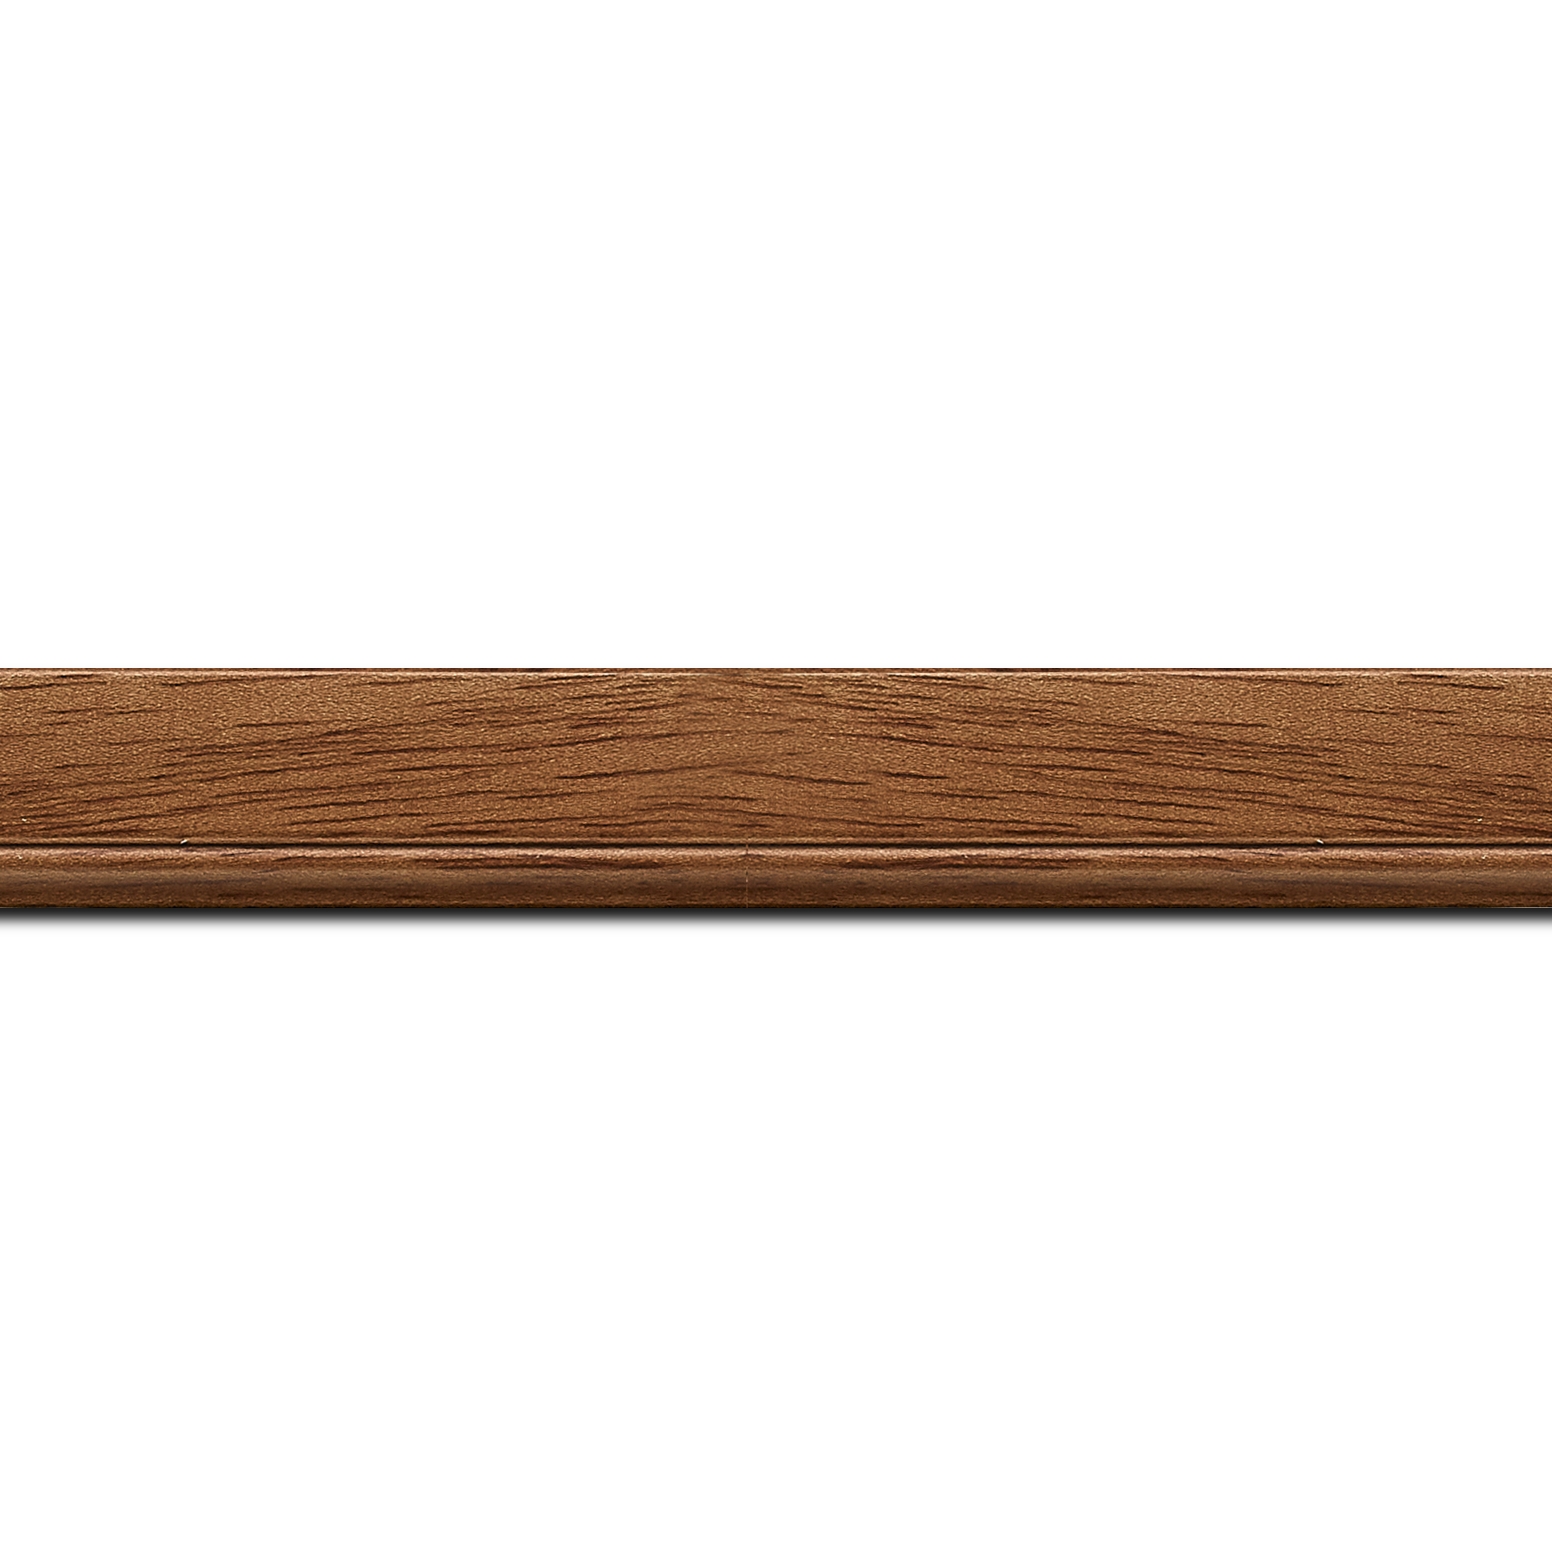 Pack par 12m, bois profil plat largeur 2.5cm couleur marron ton bois (longueur baguette pouvant varier entre 2.40m et 3m selon arrivage des bois)